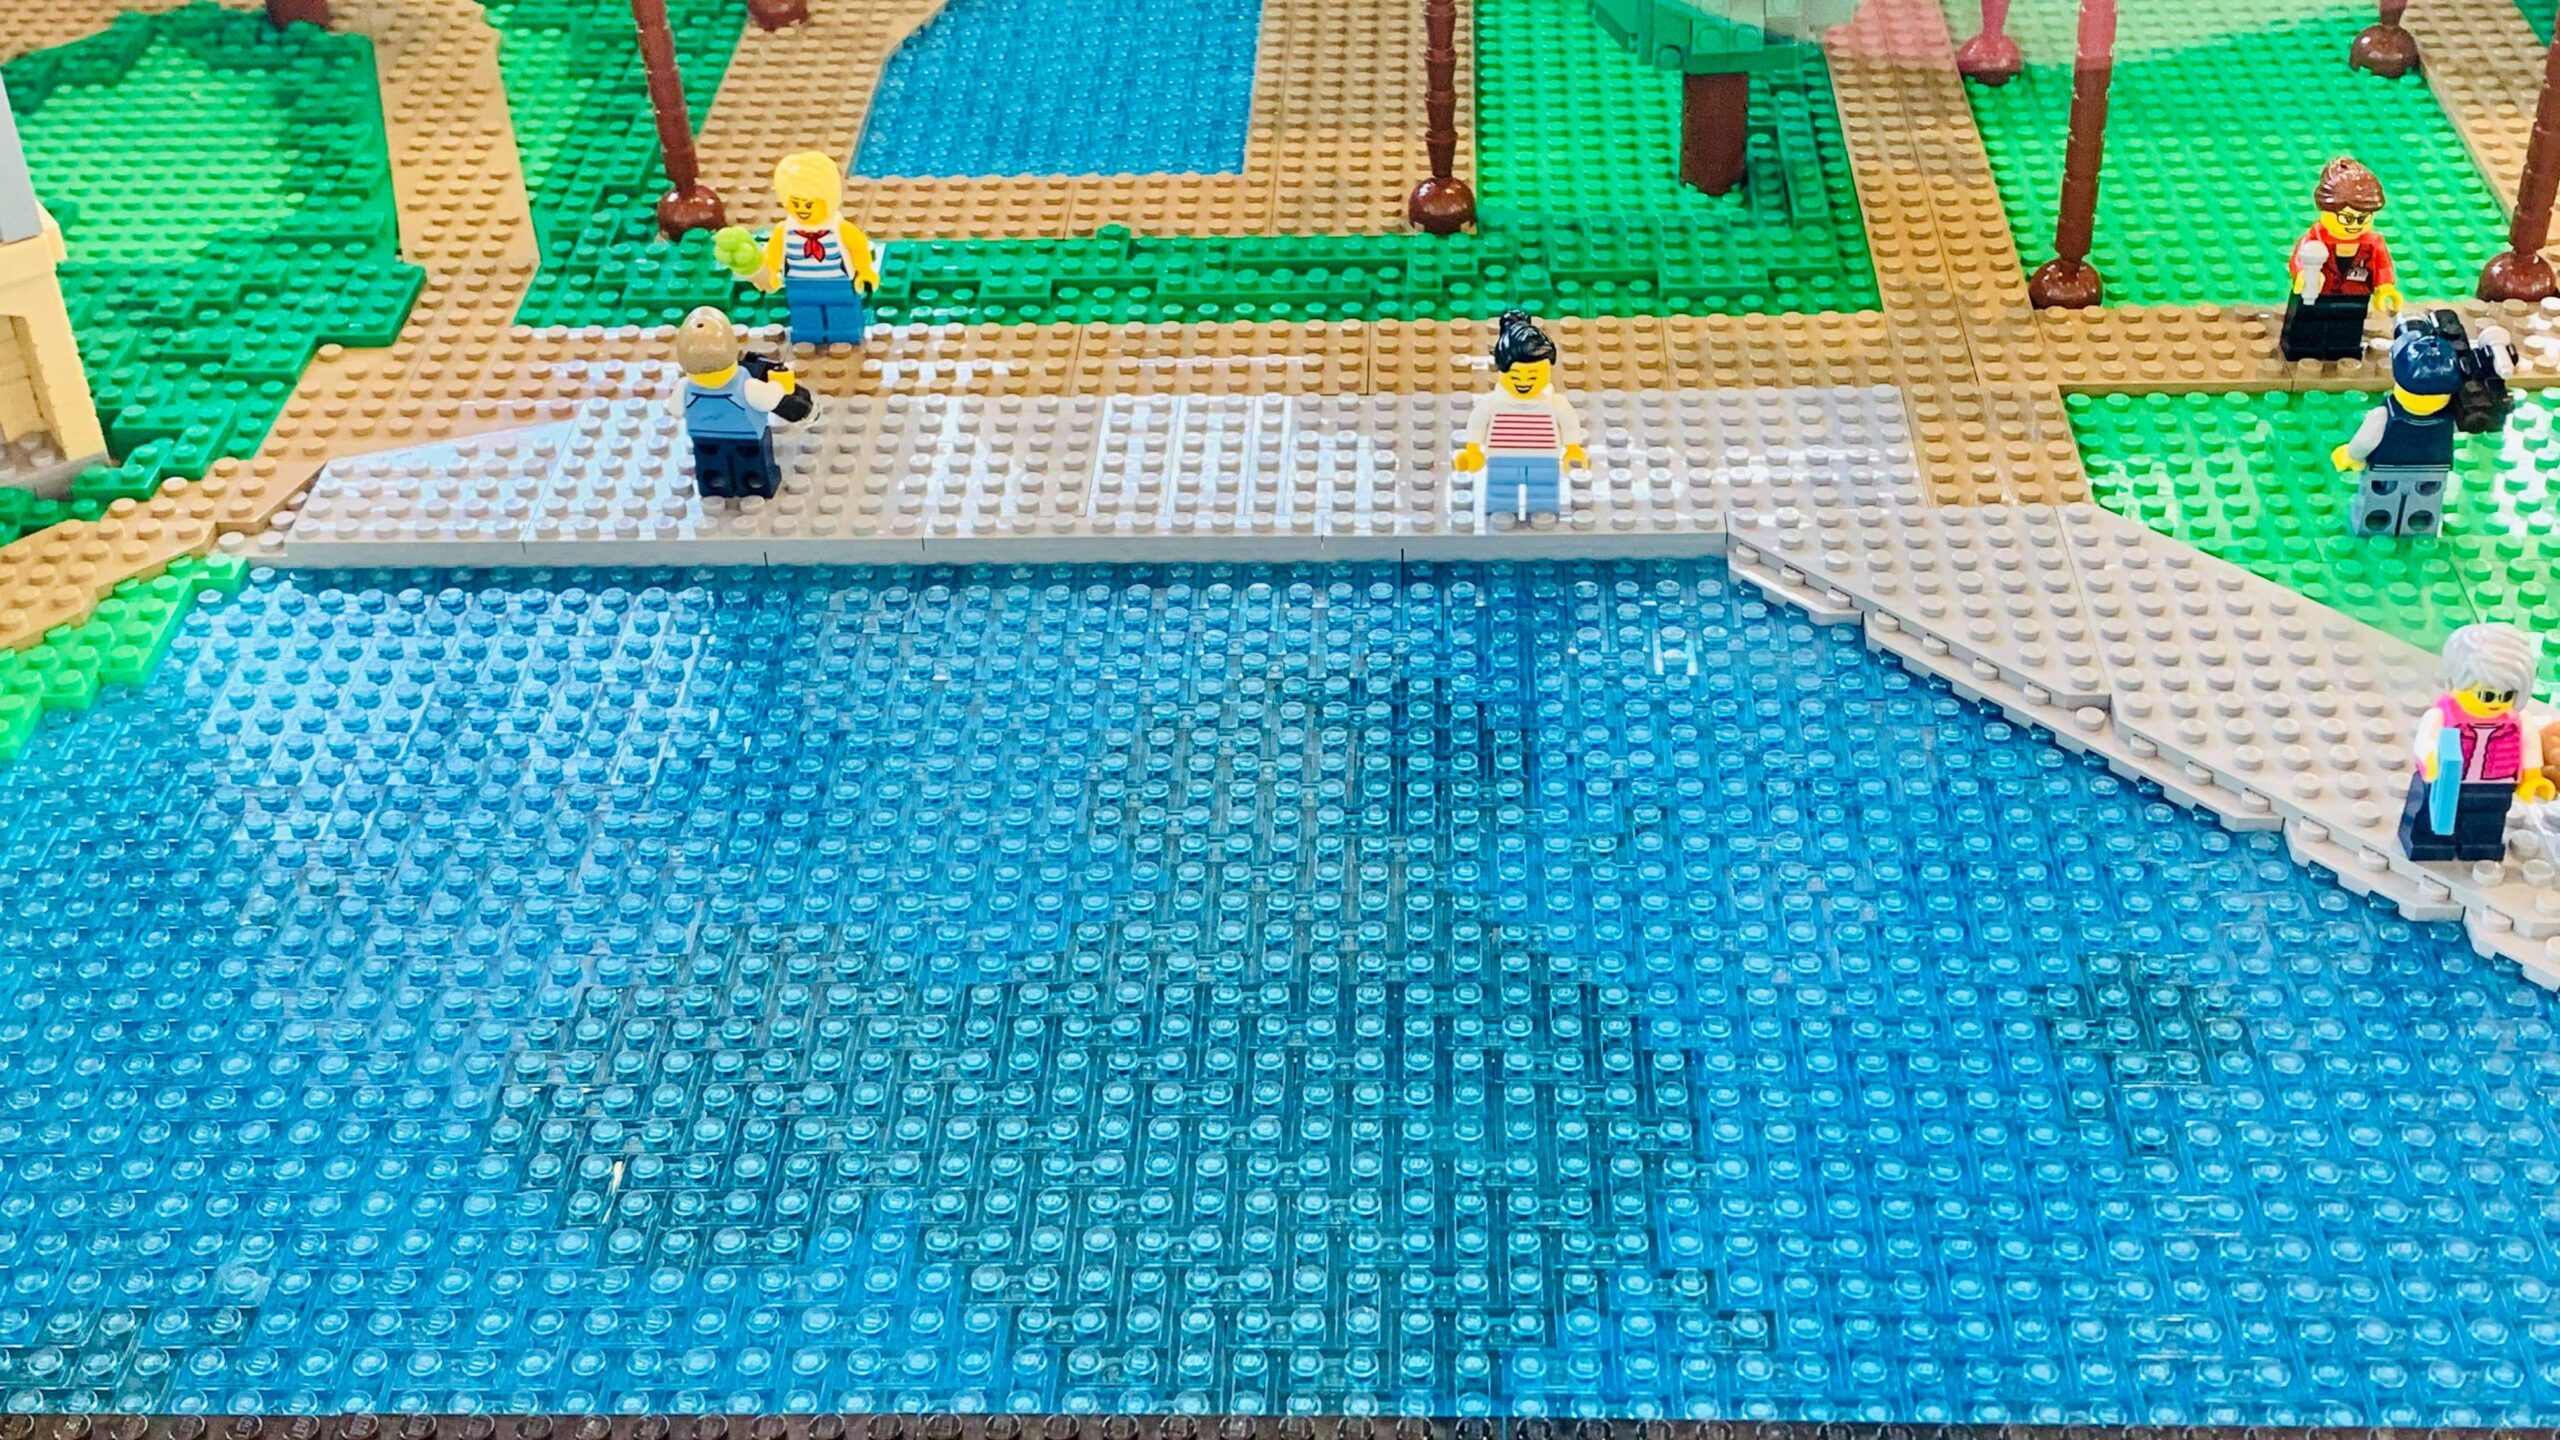 Disney’s Riviera Resort LEGO model on display in Disney Springs